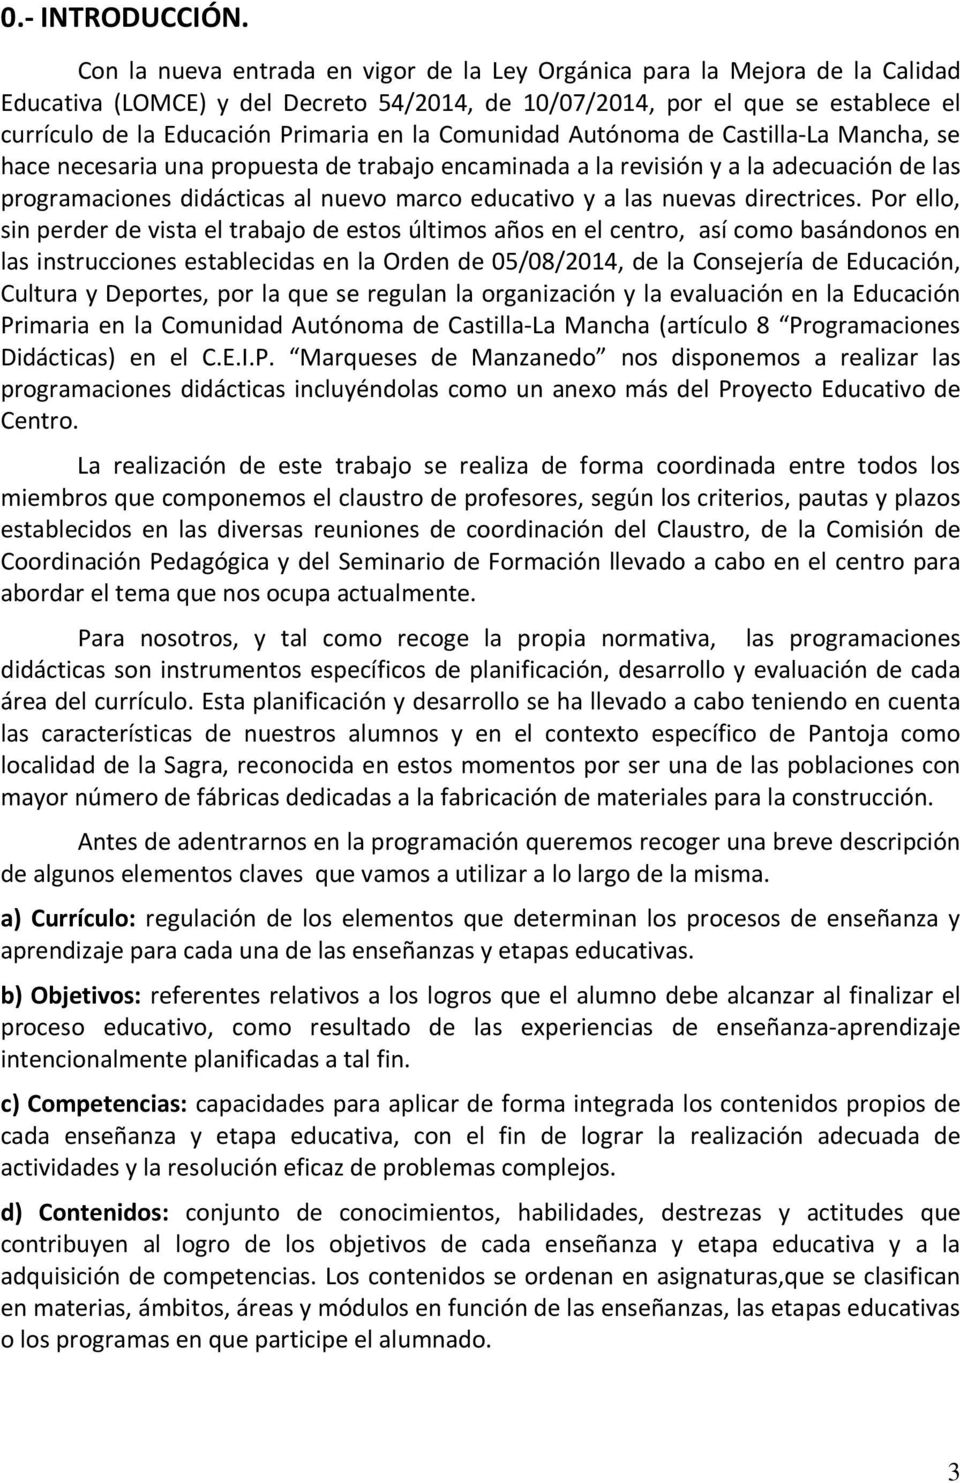 la Comunidad Autónoma de Castilla-La Mancha, se hace necesaria una propuesta de trabajo encaminada a la revisión y a la adecuación de las programaciones didácticas al nuevo marco educativo y a las